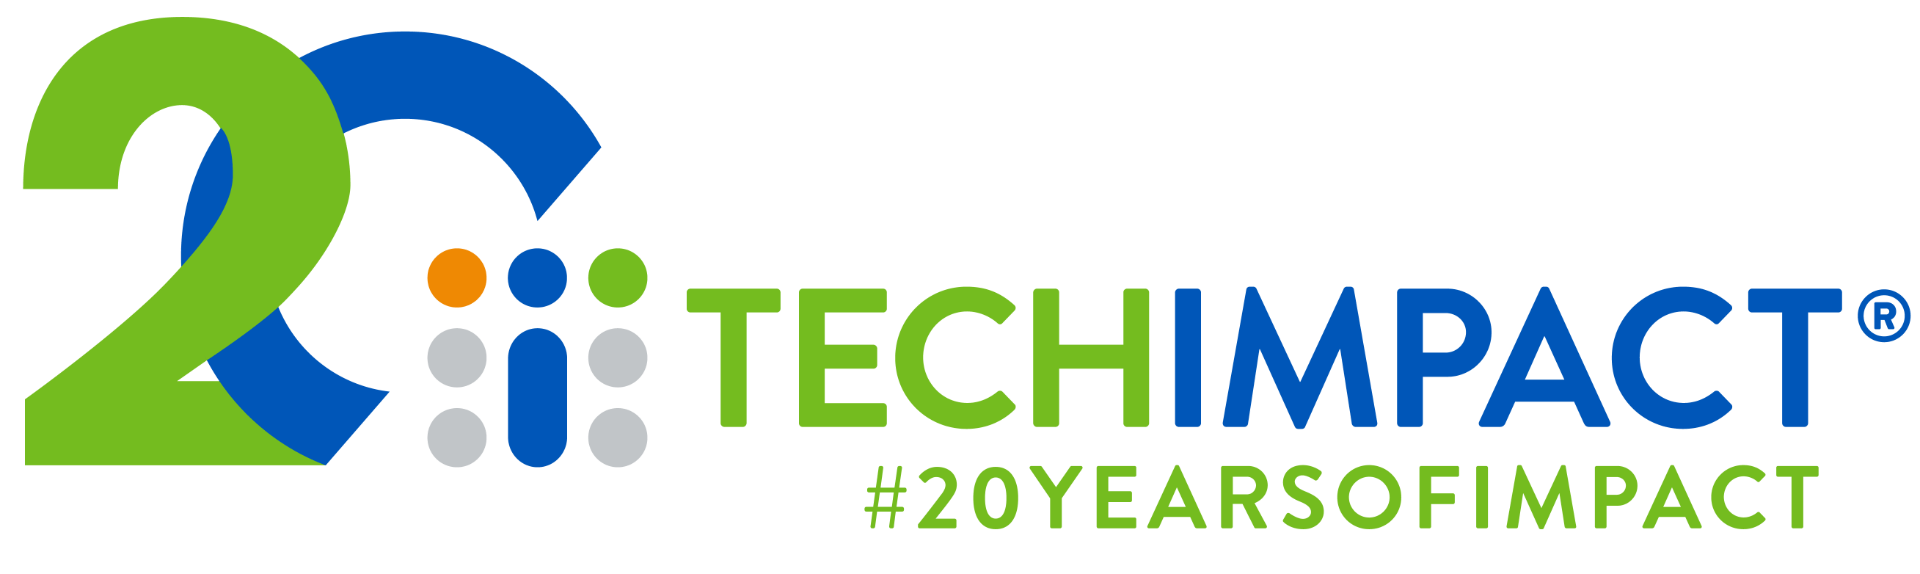 tech impact logo